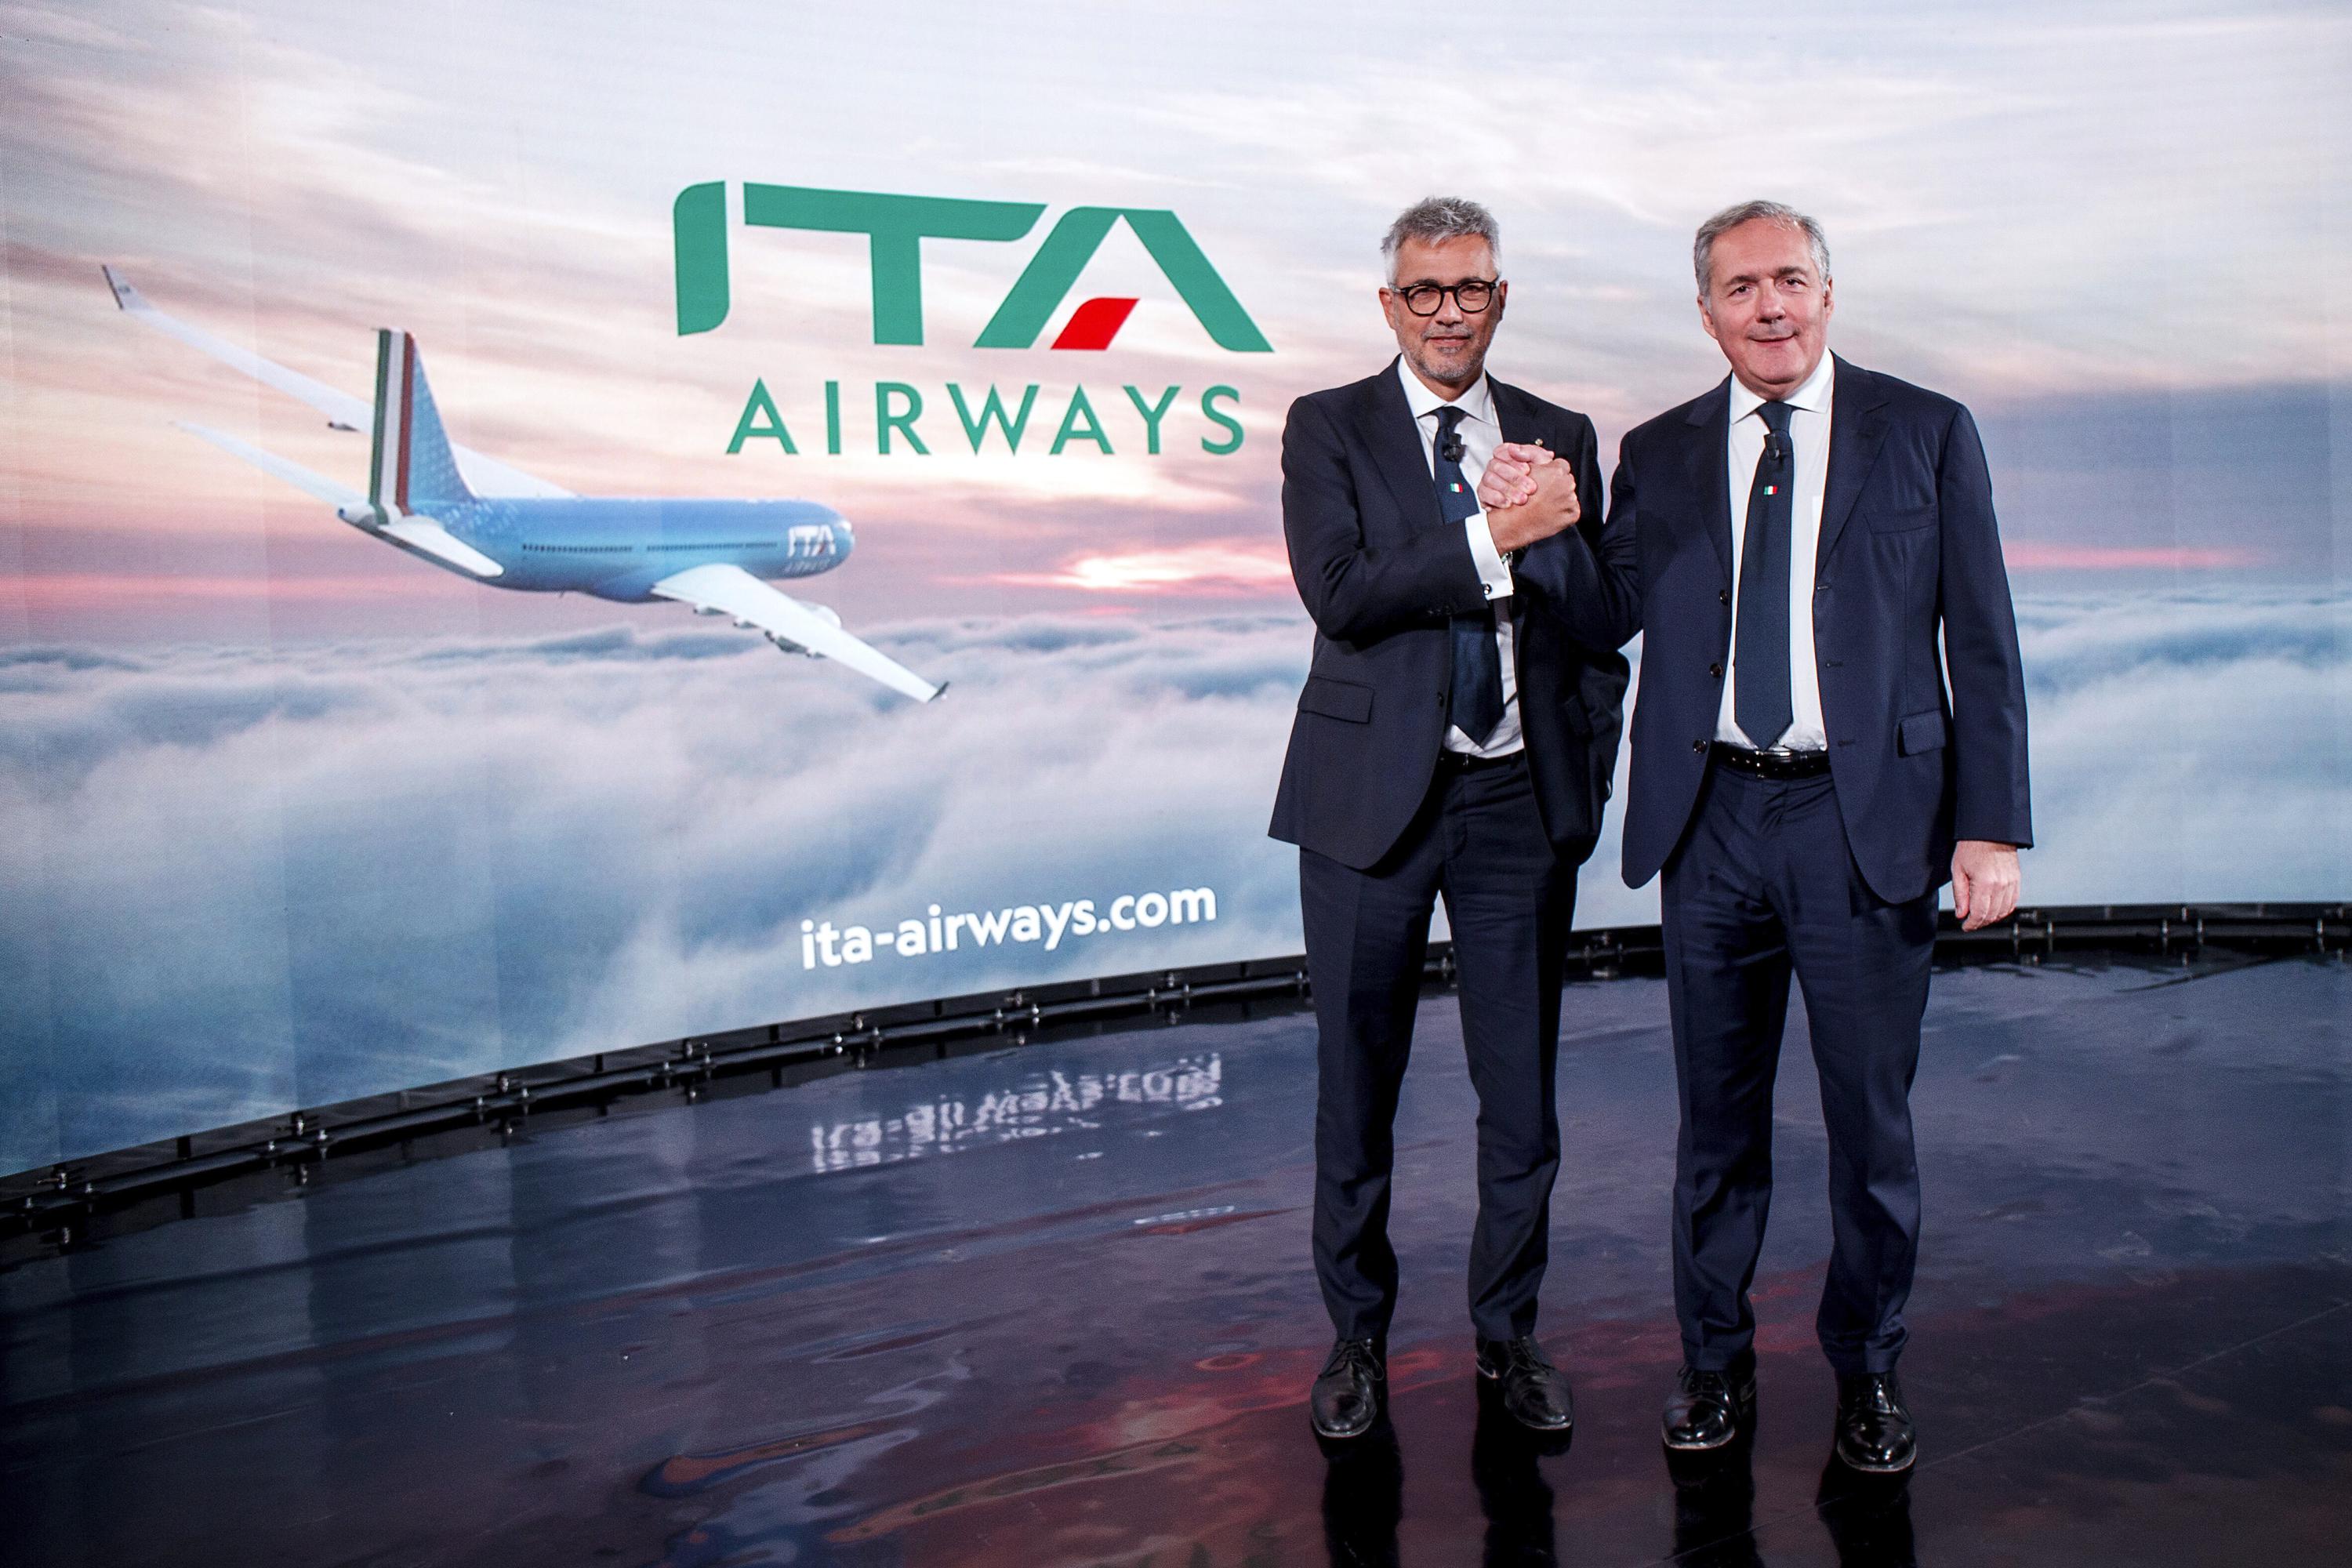 Dopo la scomparsa di Alitalia, ITA decolla con un nuovo look